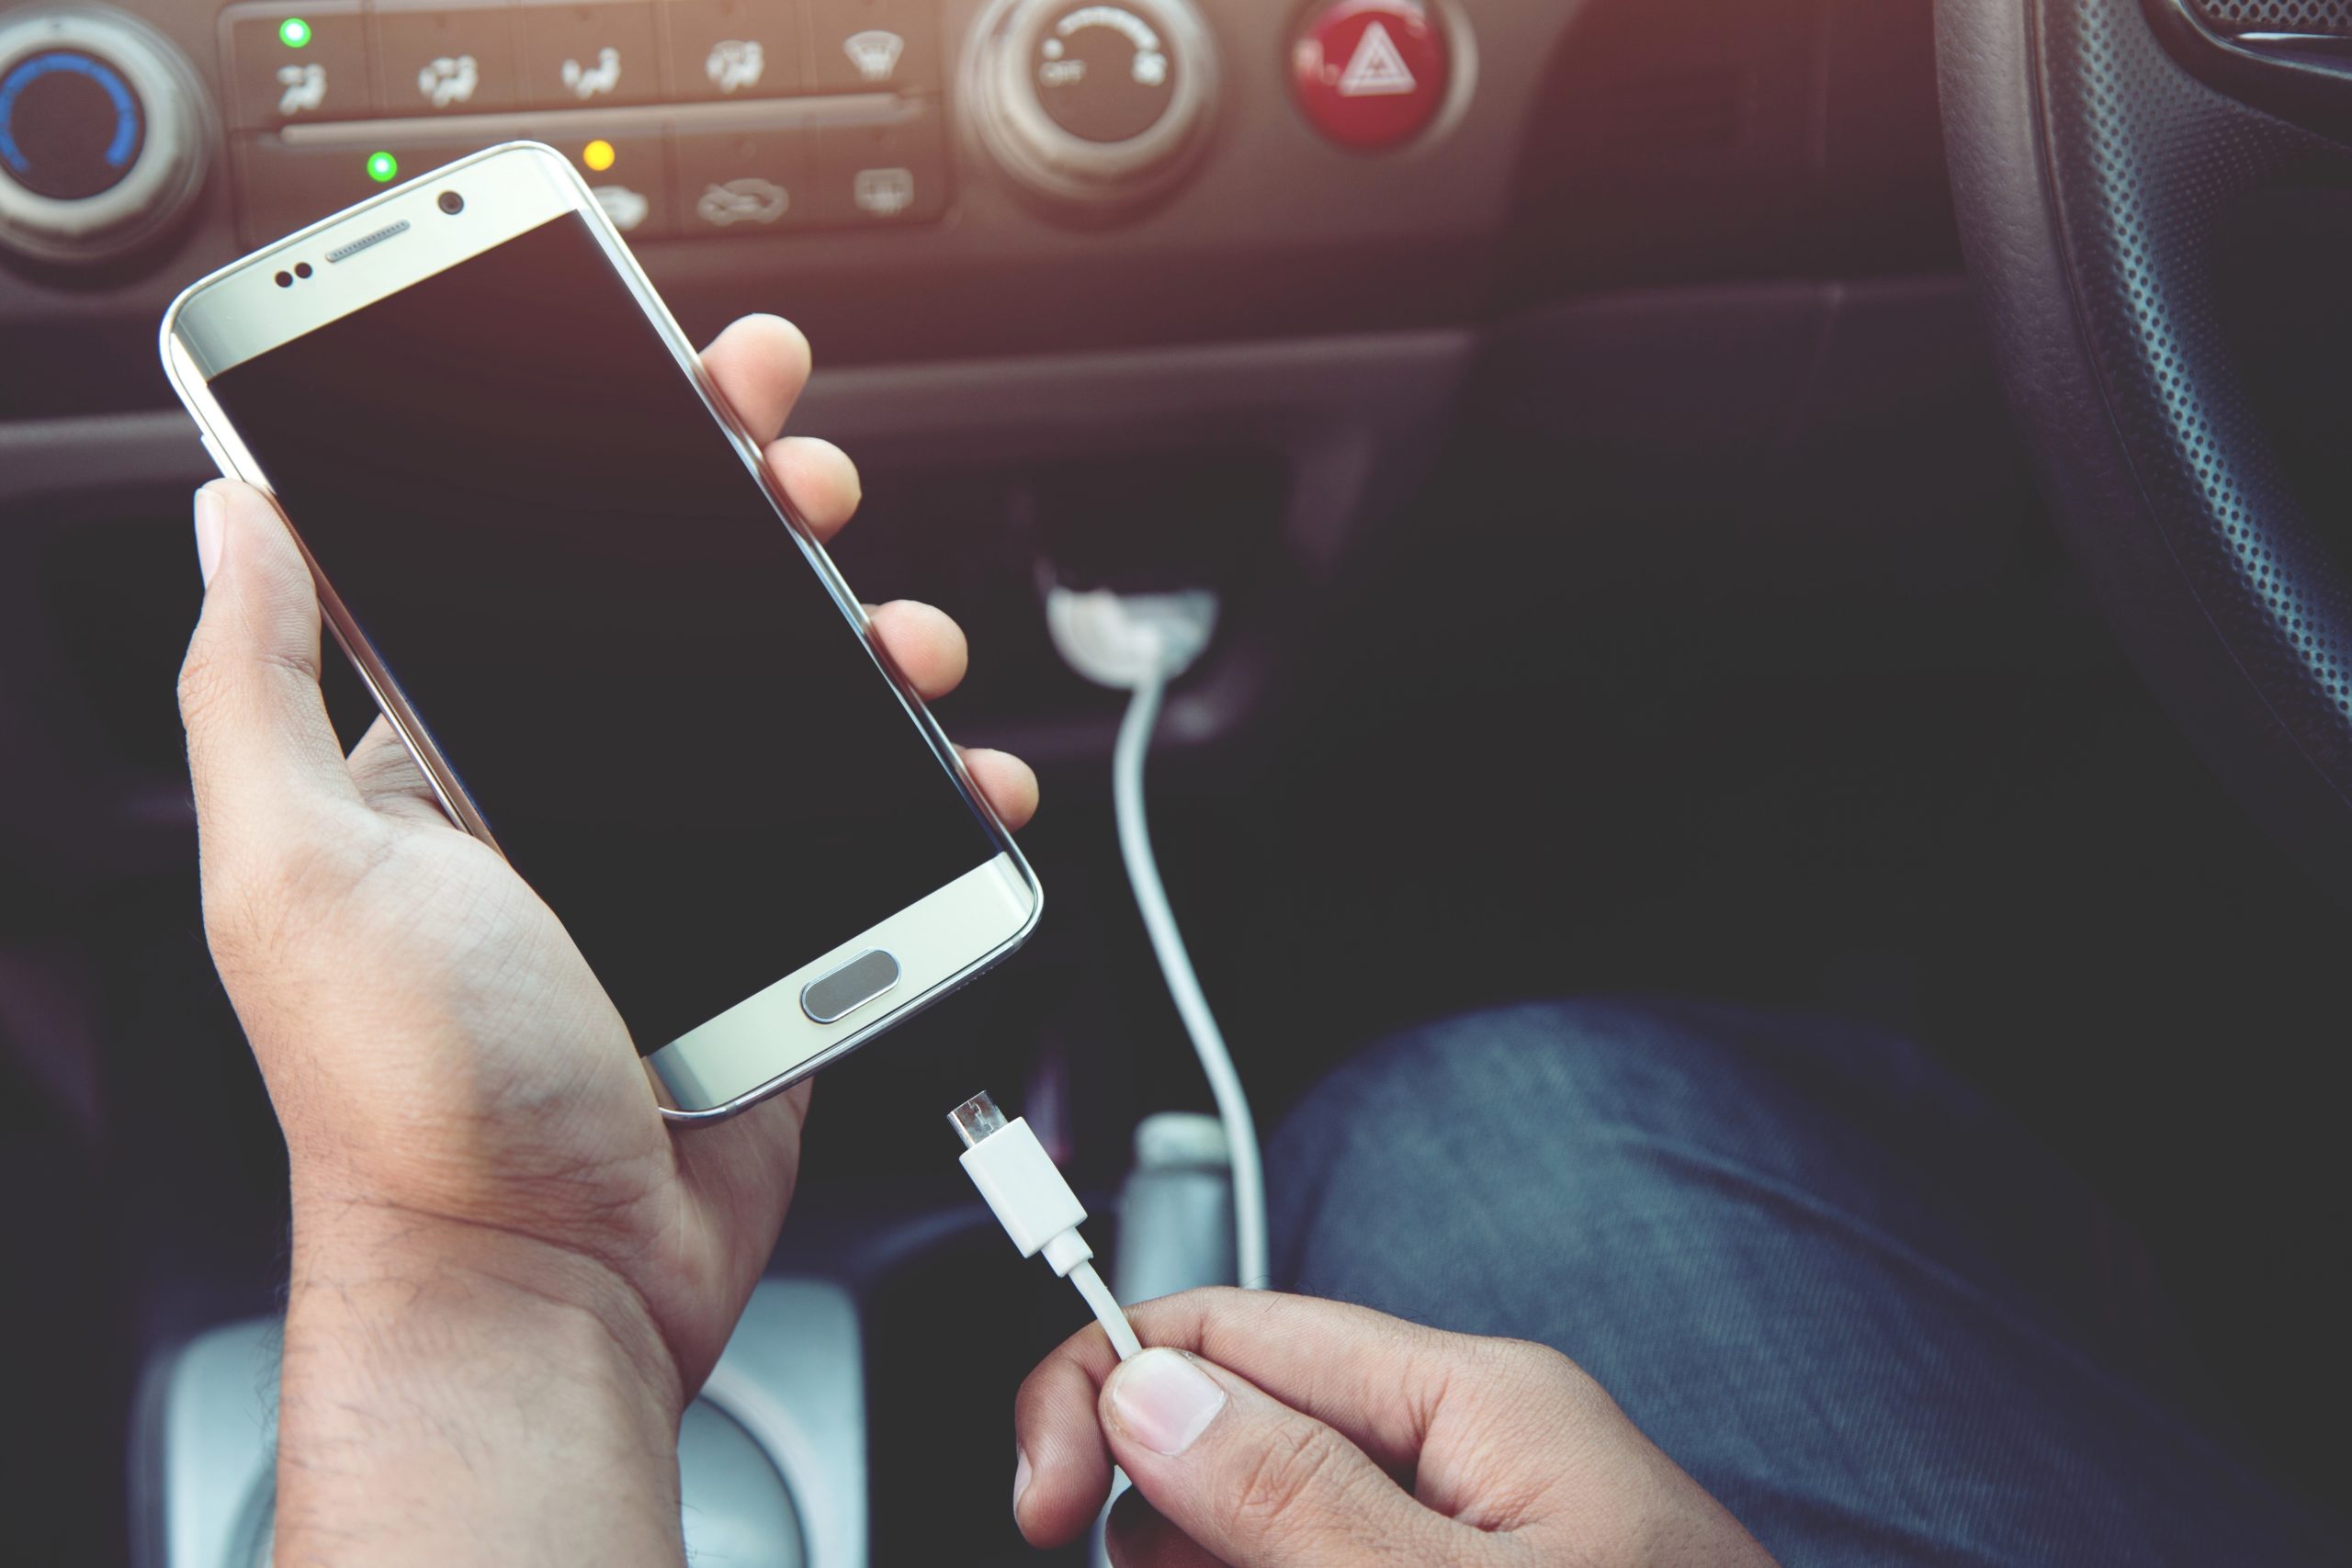 Cargar su teléfono celular en su automóvil podría ser el peor error que puede cometer.